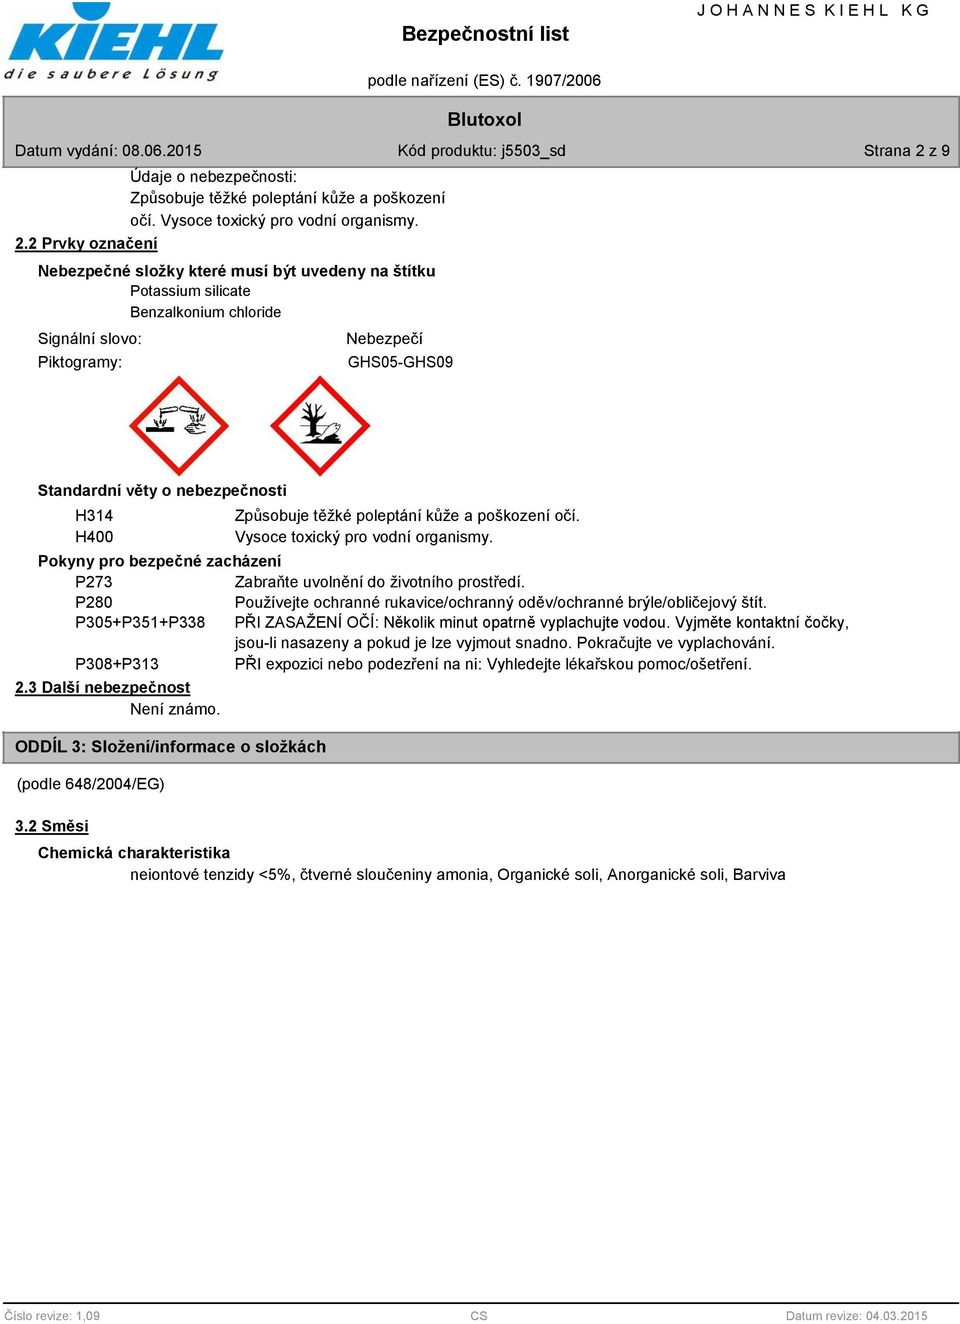 2 Prvky označení Nebezpečné složky které musí být uvedeny na štítku Potassium silicate Benzalkonium chloride Signální slovo: Piktogramy: Nebezpečí GHS05-GHS09 Standardní věty o nebezpečnosti H314